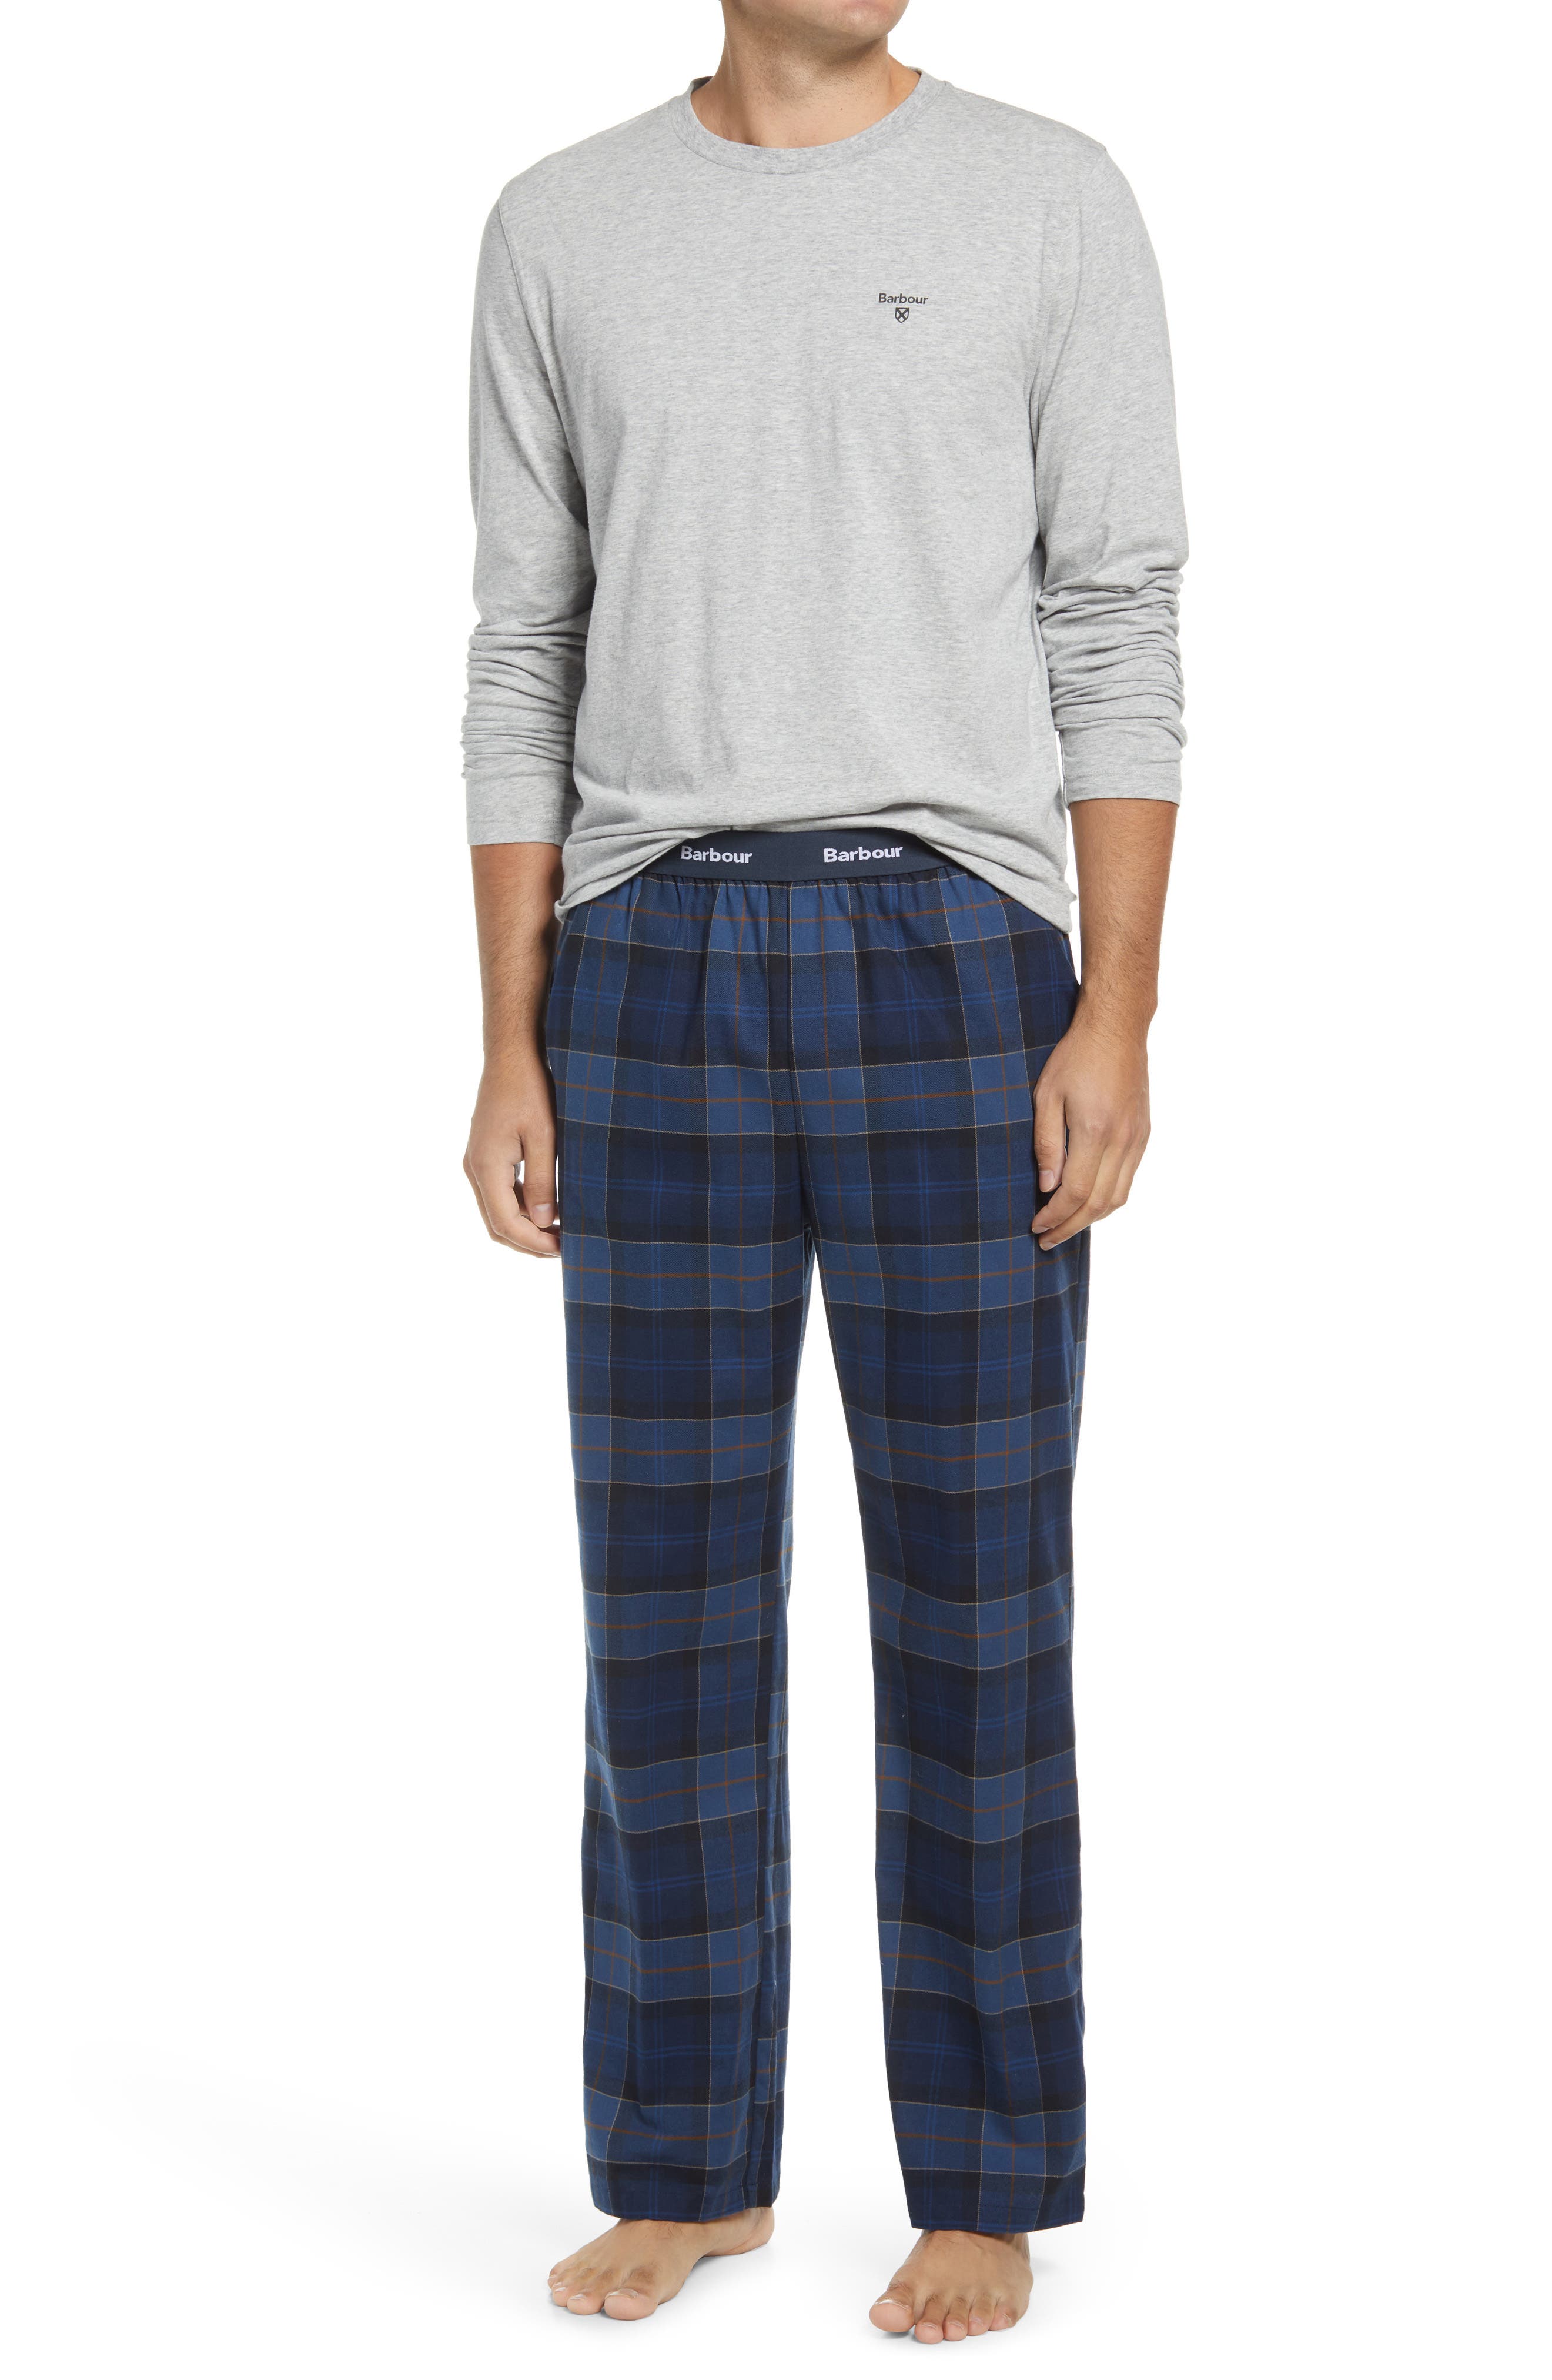 Men's Jersey Knit Pajamas, Loungewear 